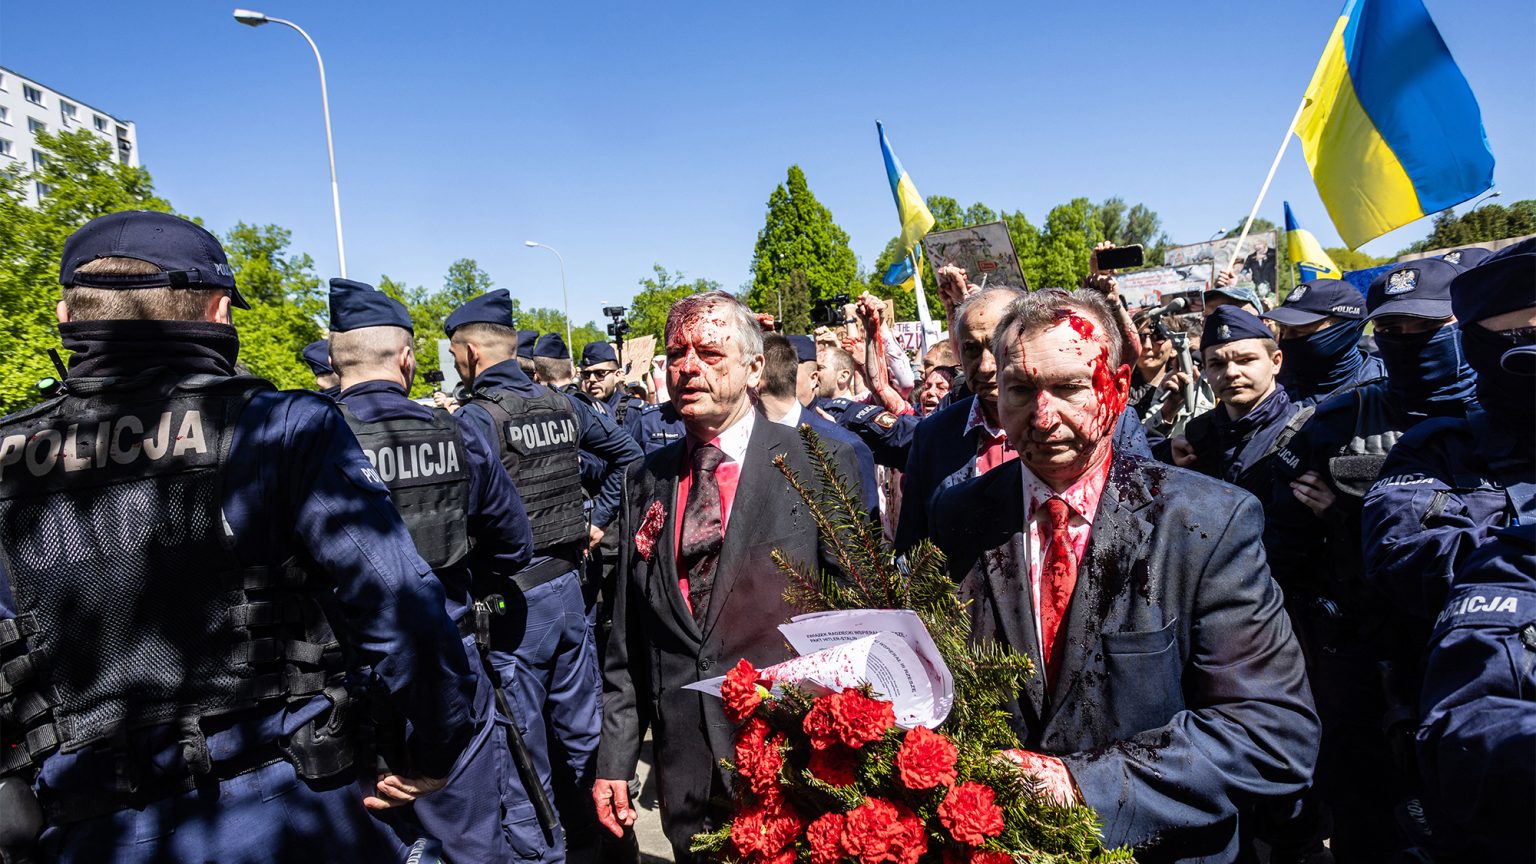 Moszkva tiltakozik az orosz nagykövetet ért, vörös festékes támadás miatt